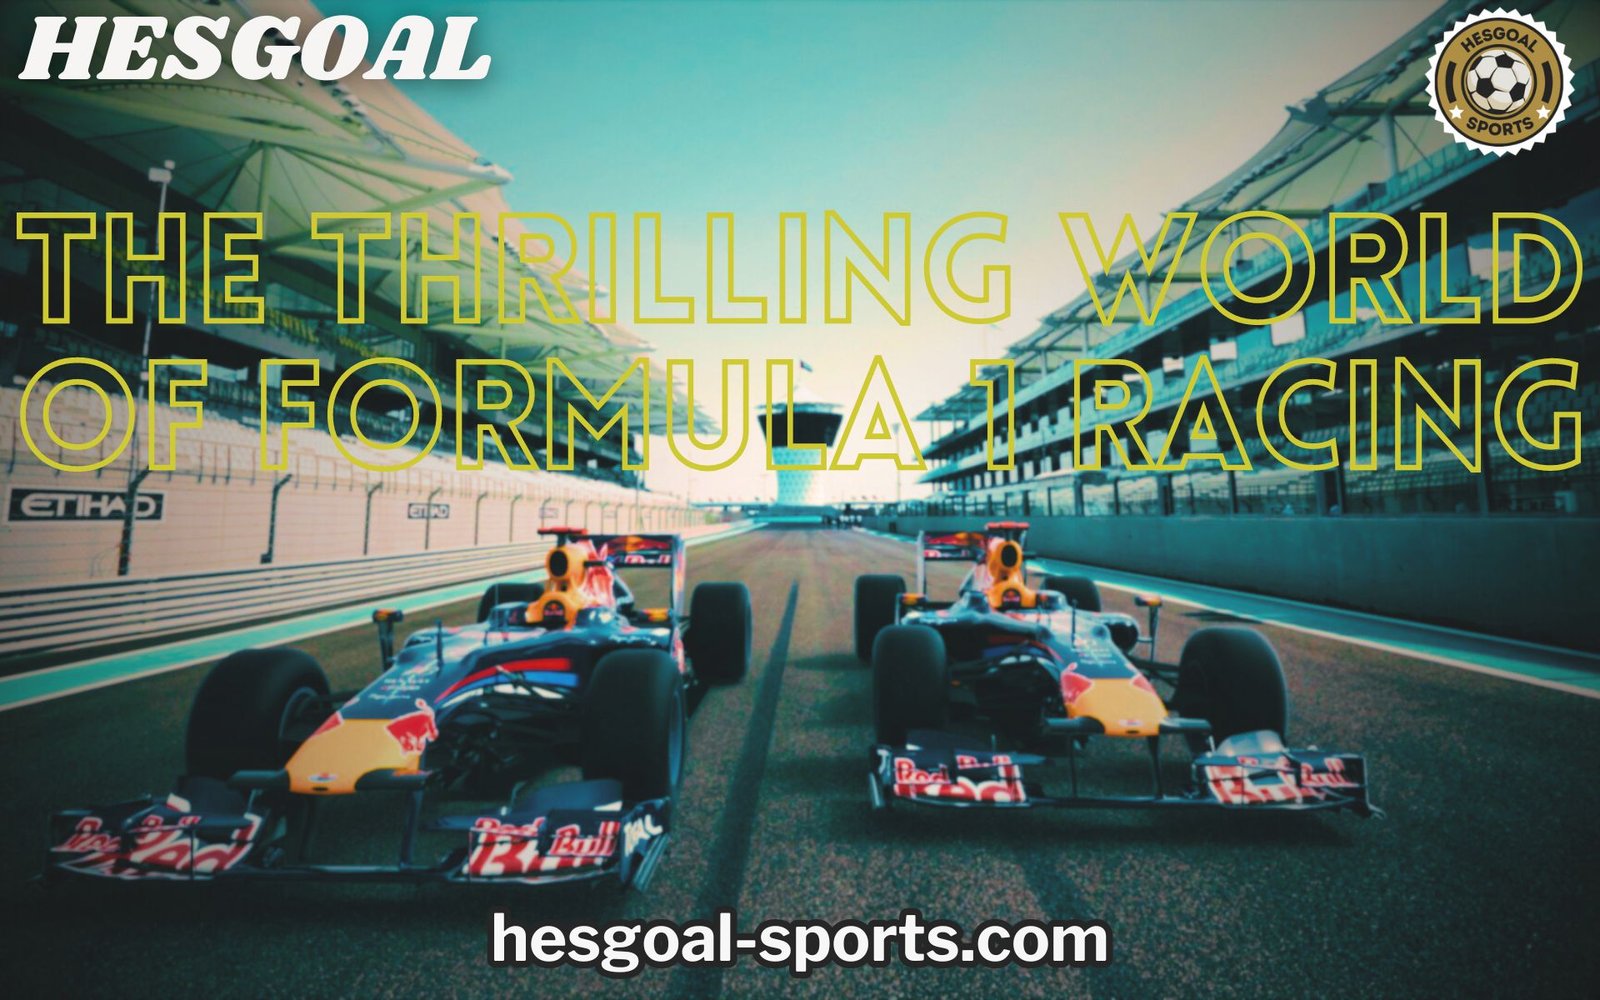 hesgoal formula 1